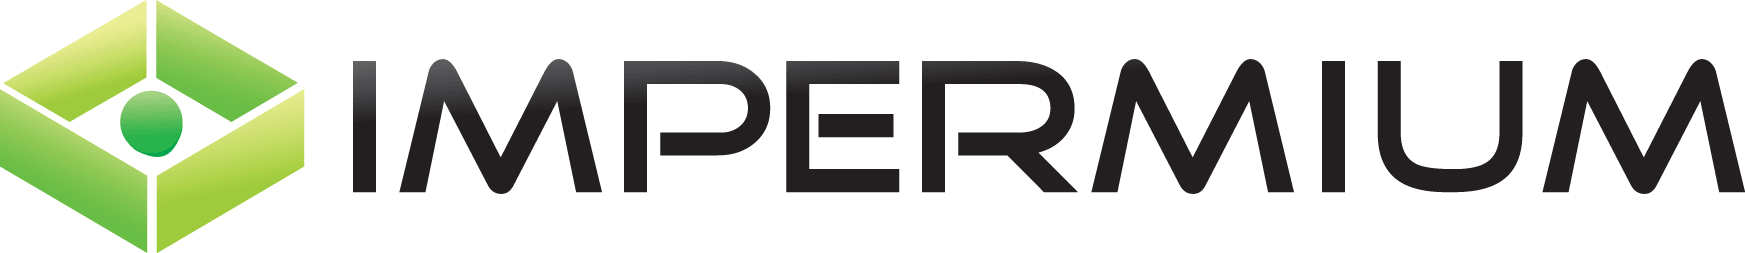 Impermium logo